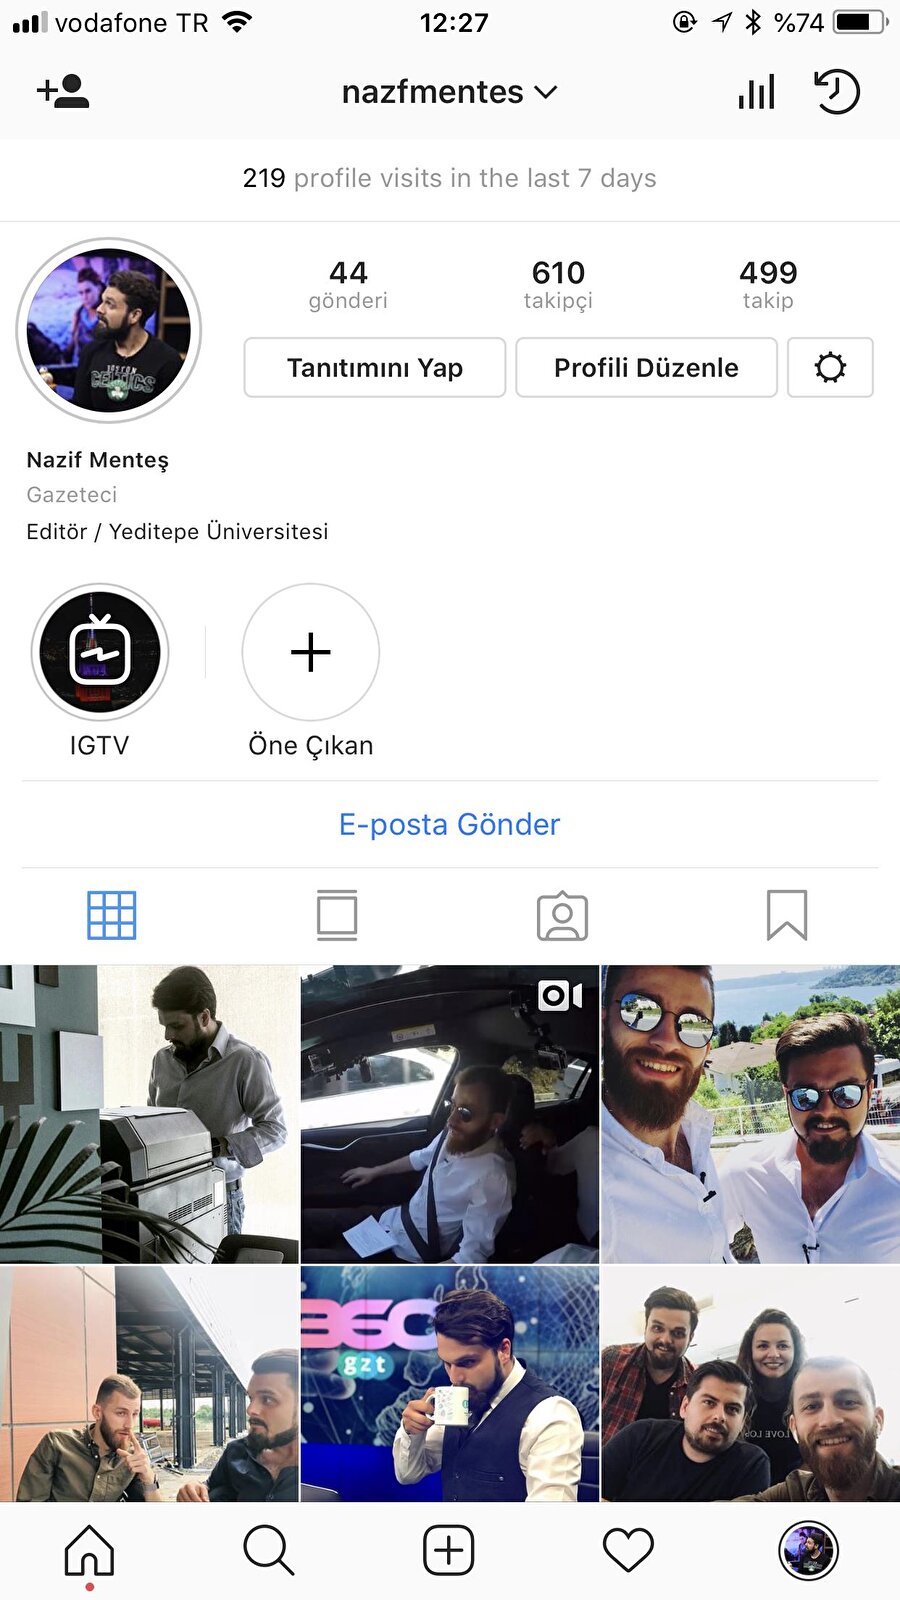 1. Instagram uygulaması açılıp sağ alt köşede yer alan profil simgesine dokunmak. 

                                    
                                